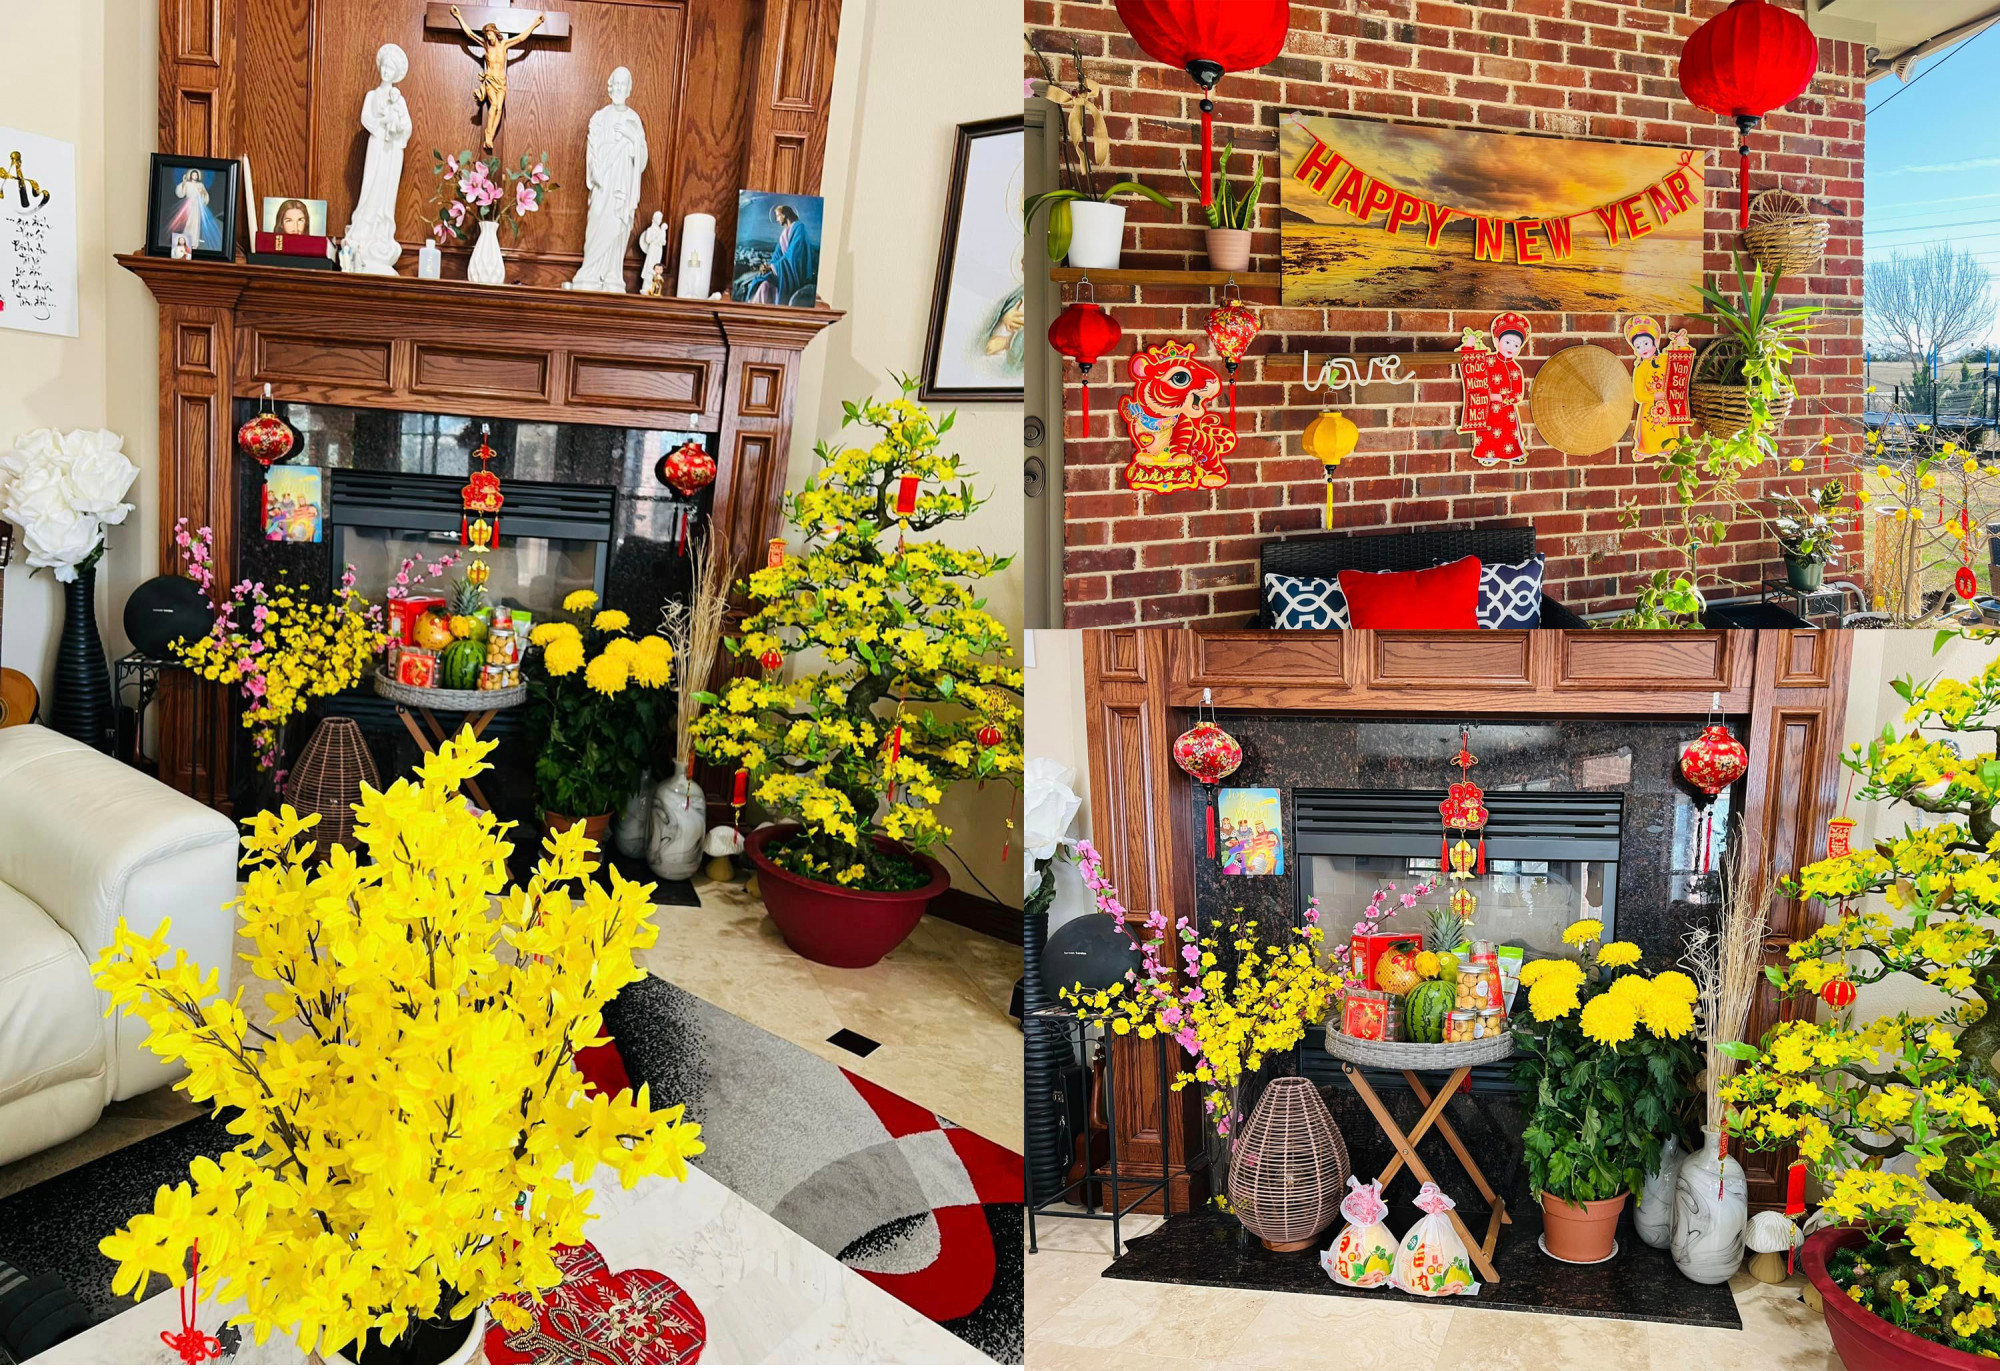 Bên trong căn nhà của ca sĩ Hồng Ngọc được trang trí với hoa, hình ảnh có màu đỏ, vàng bắt mắt.